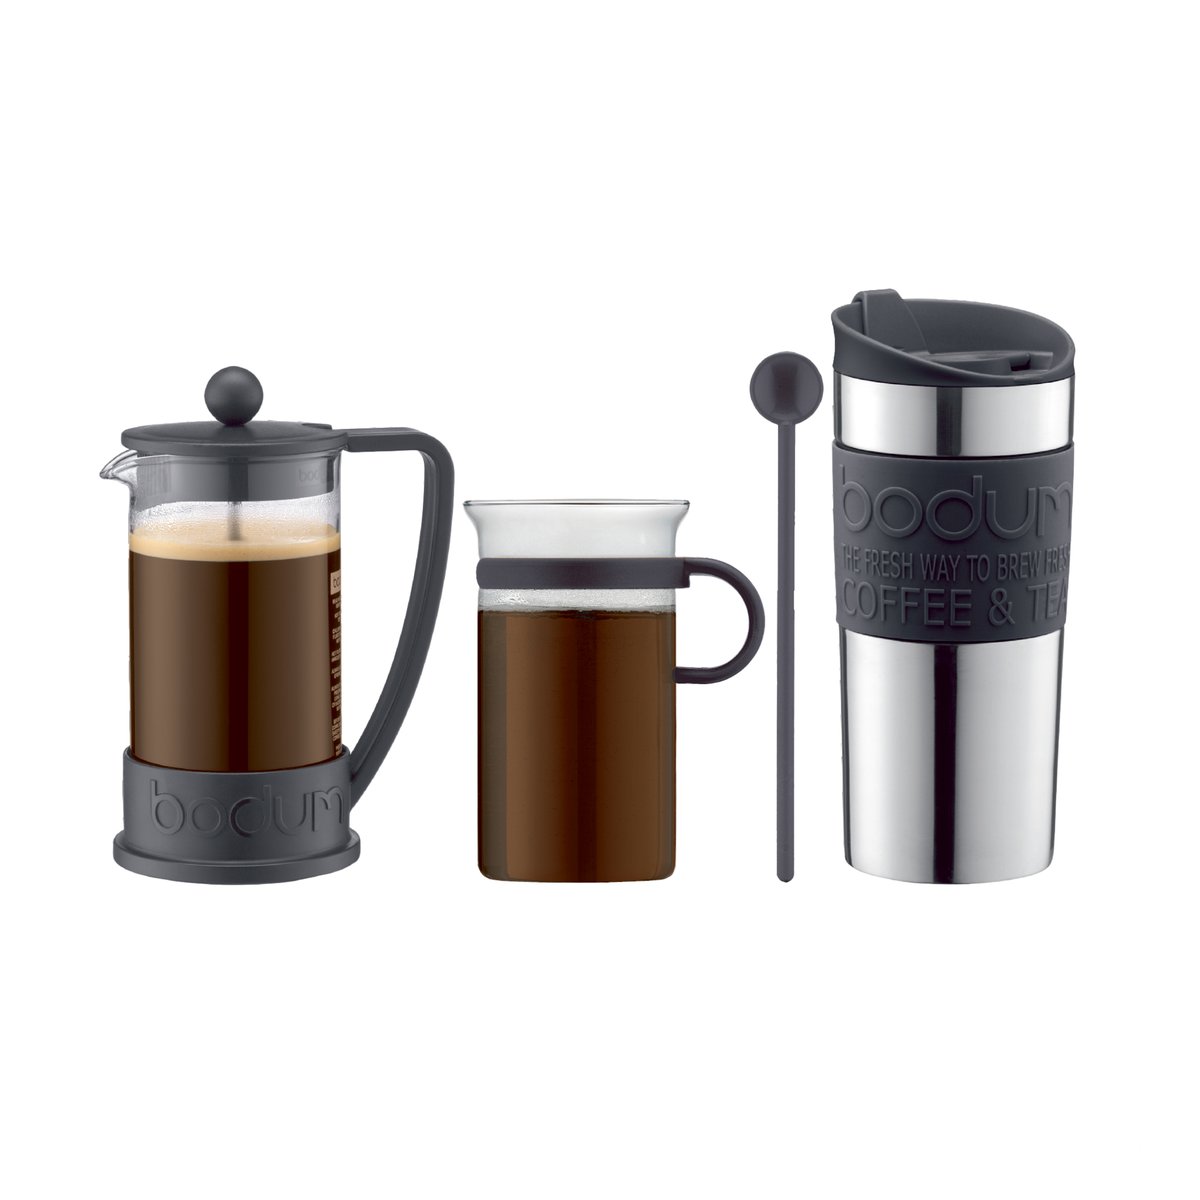 bodum set à café avec cafetière à piston, tasse, mug de voyage et cuillère noir